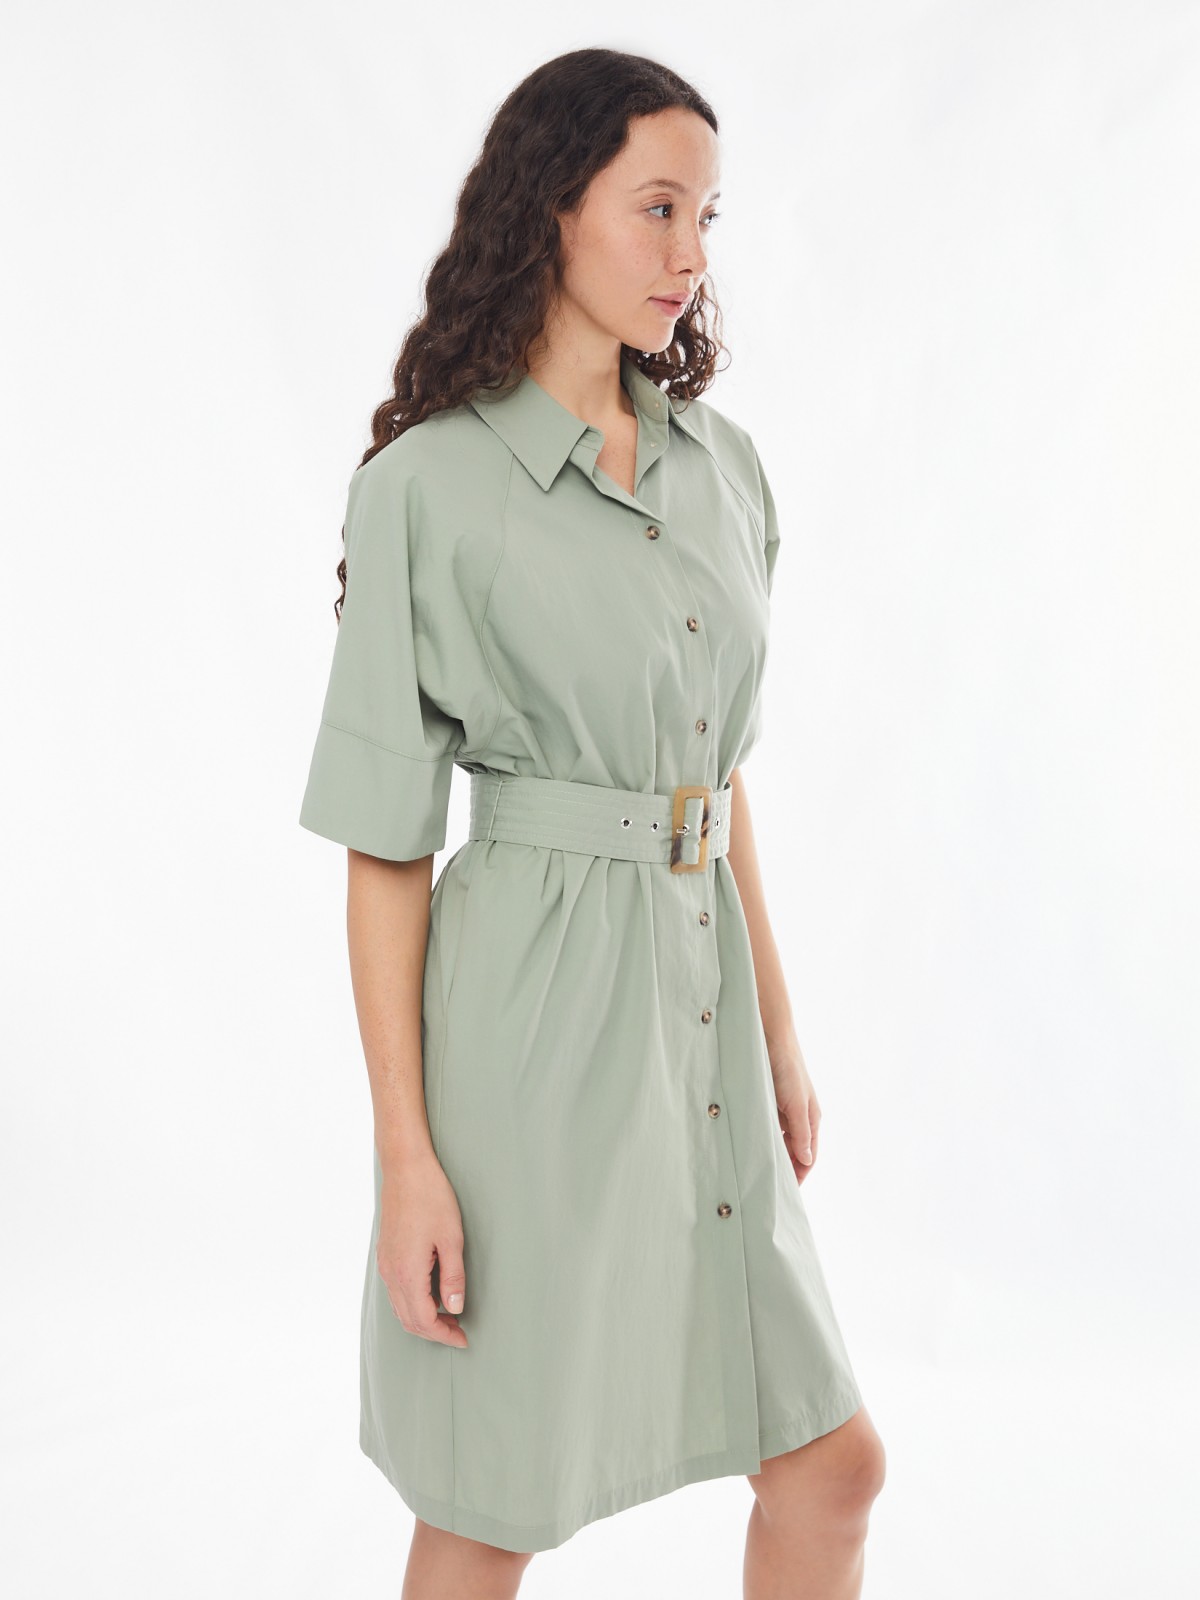 Платье-рубашка с ремнём и рукавами-реглан zolla 02413827Y111, цвет хаки, размер XS/S - фото 1